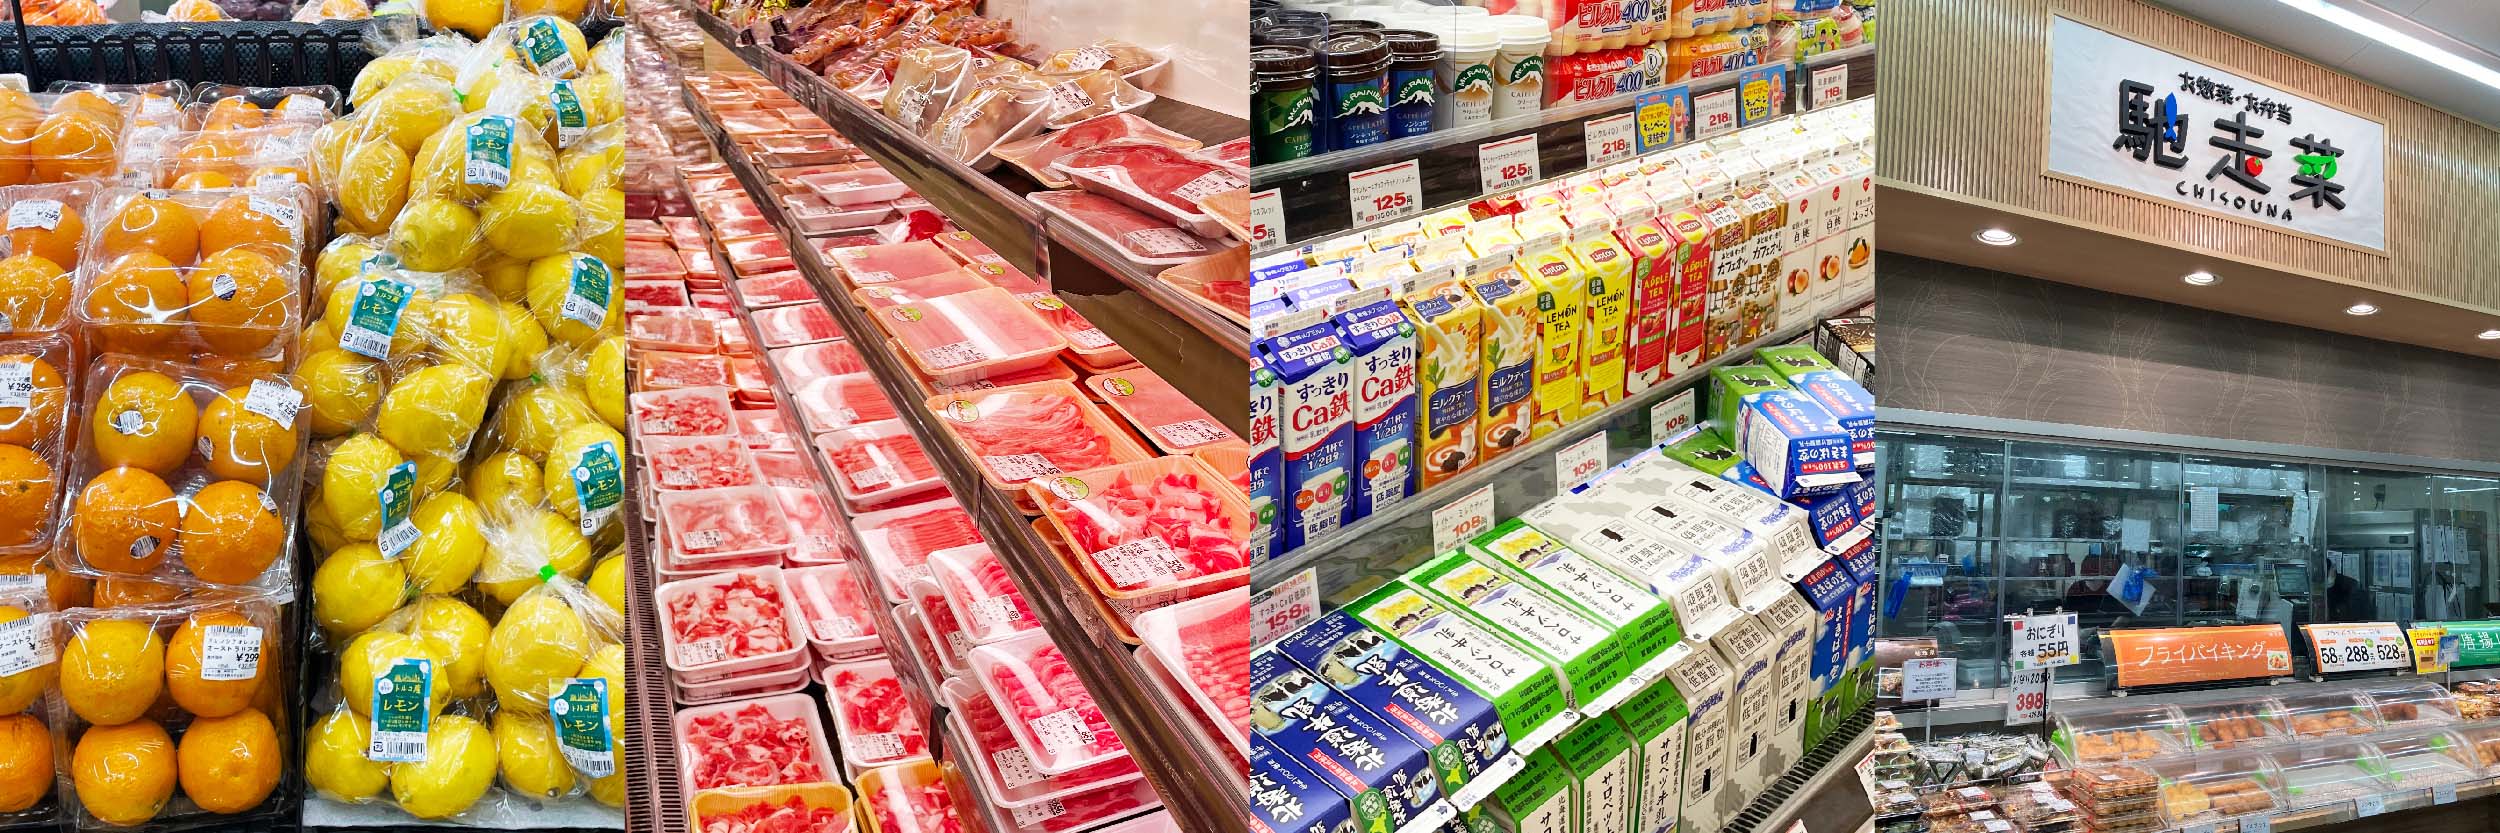 京都滋賀を中心に展開するスーパーとしての役割